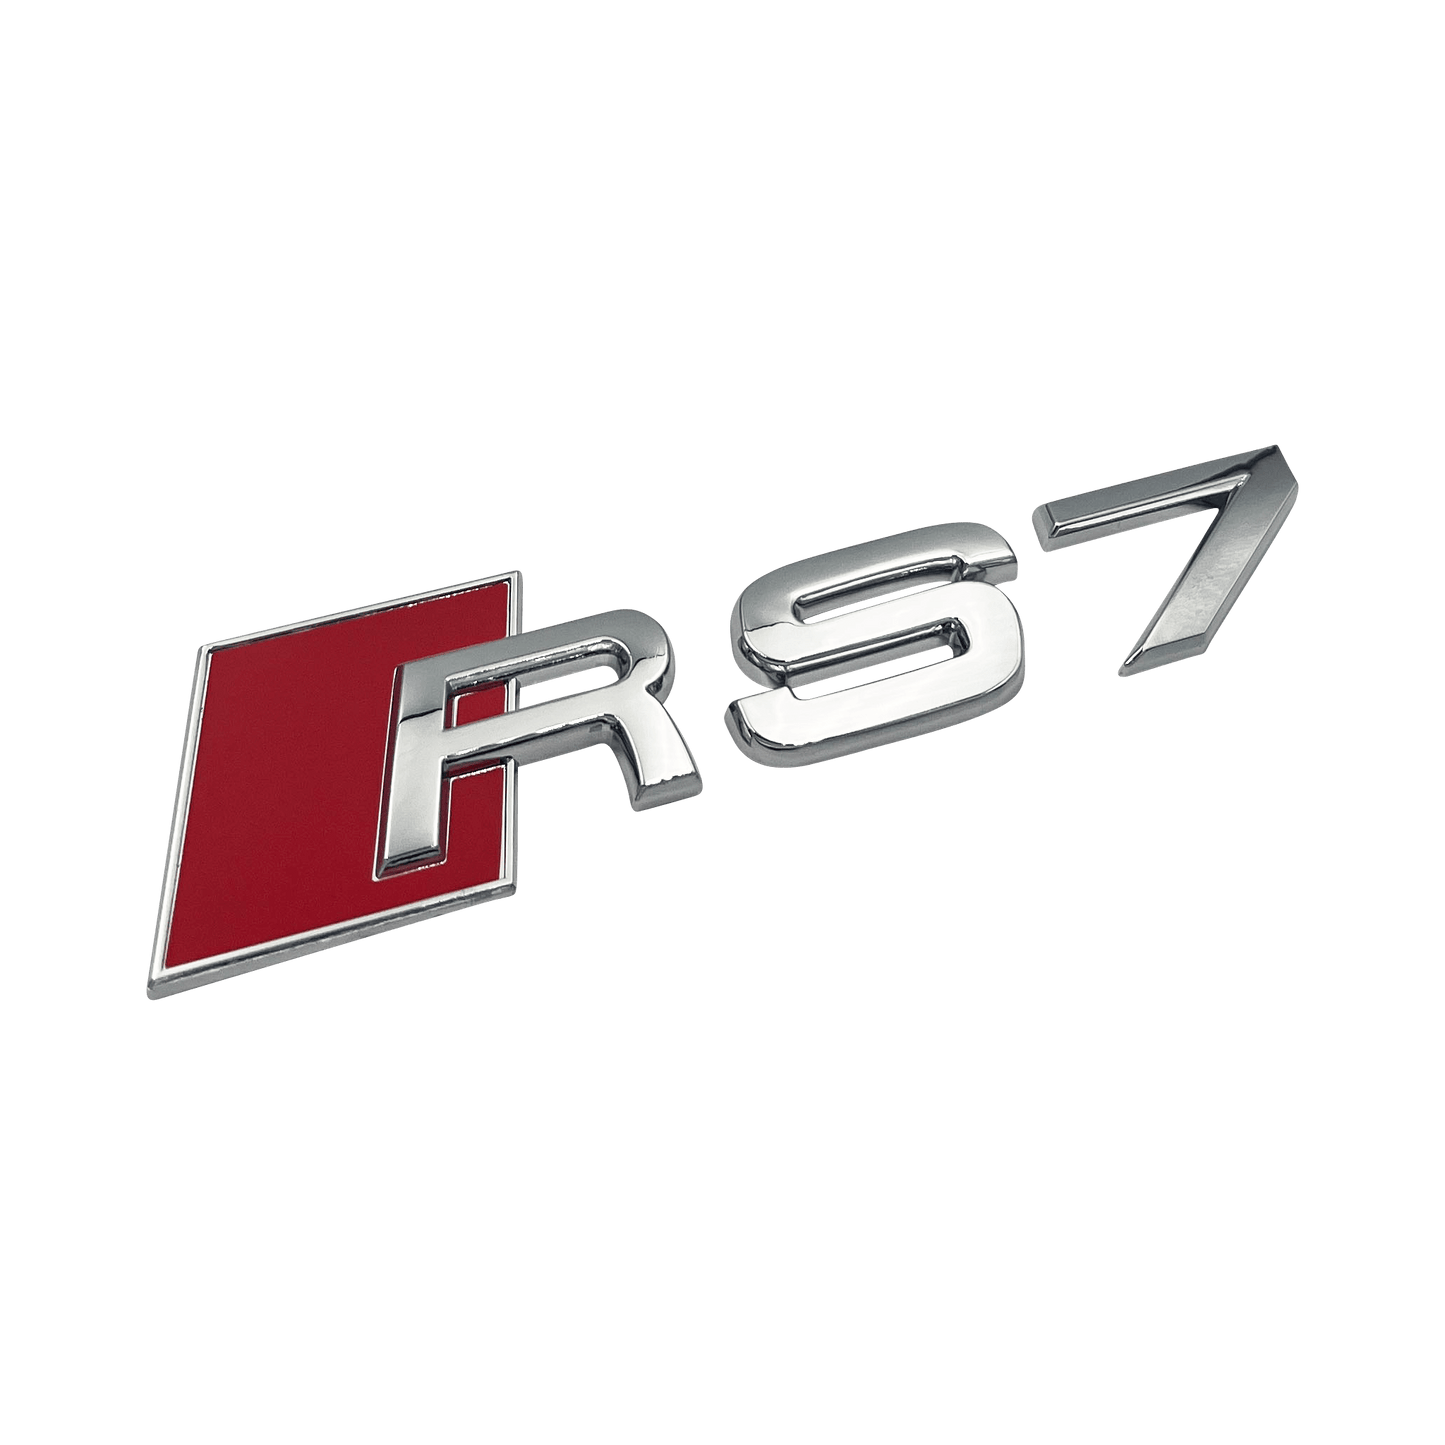 Chrome Audi RS7 Rear Emblem Badge